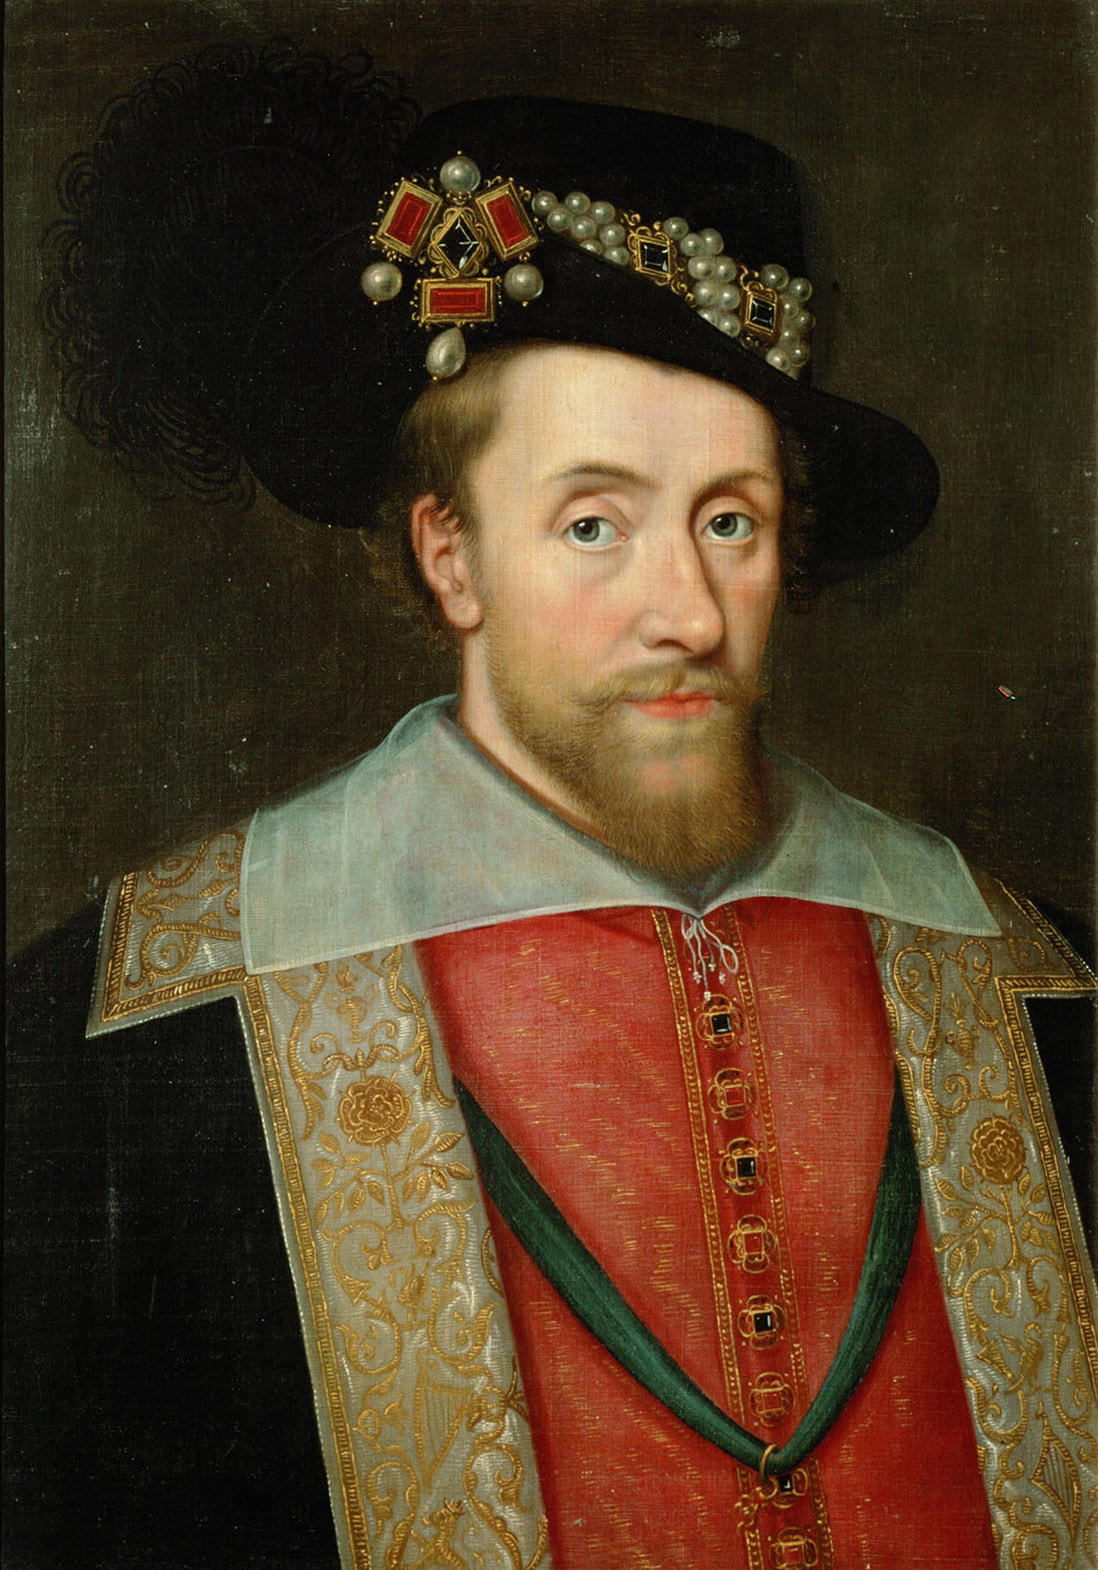 Anonym | König Jakob I. (1566-1625) von England und Schottland, Brustbild | Displayed motifs: Human face, Clothing, Man, Crown, Halo, Fashion accessory, Hat, 